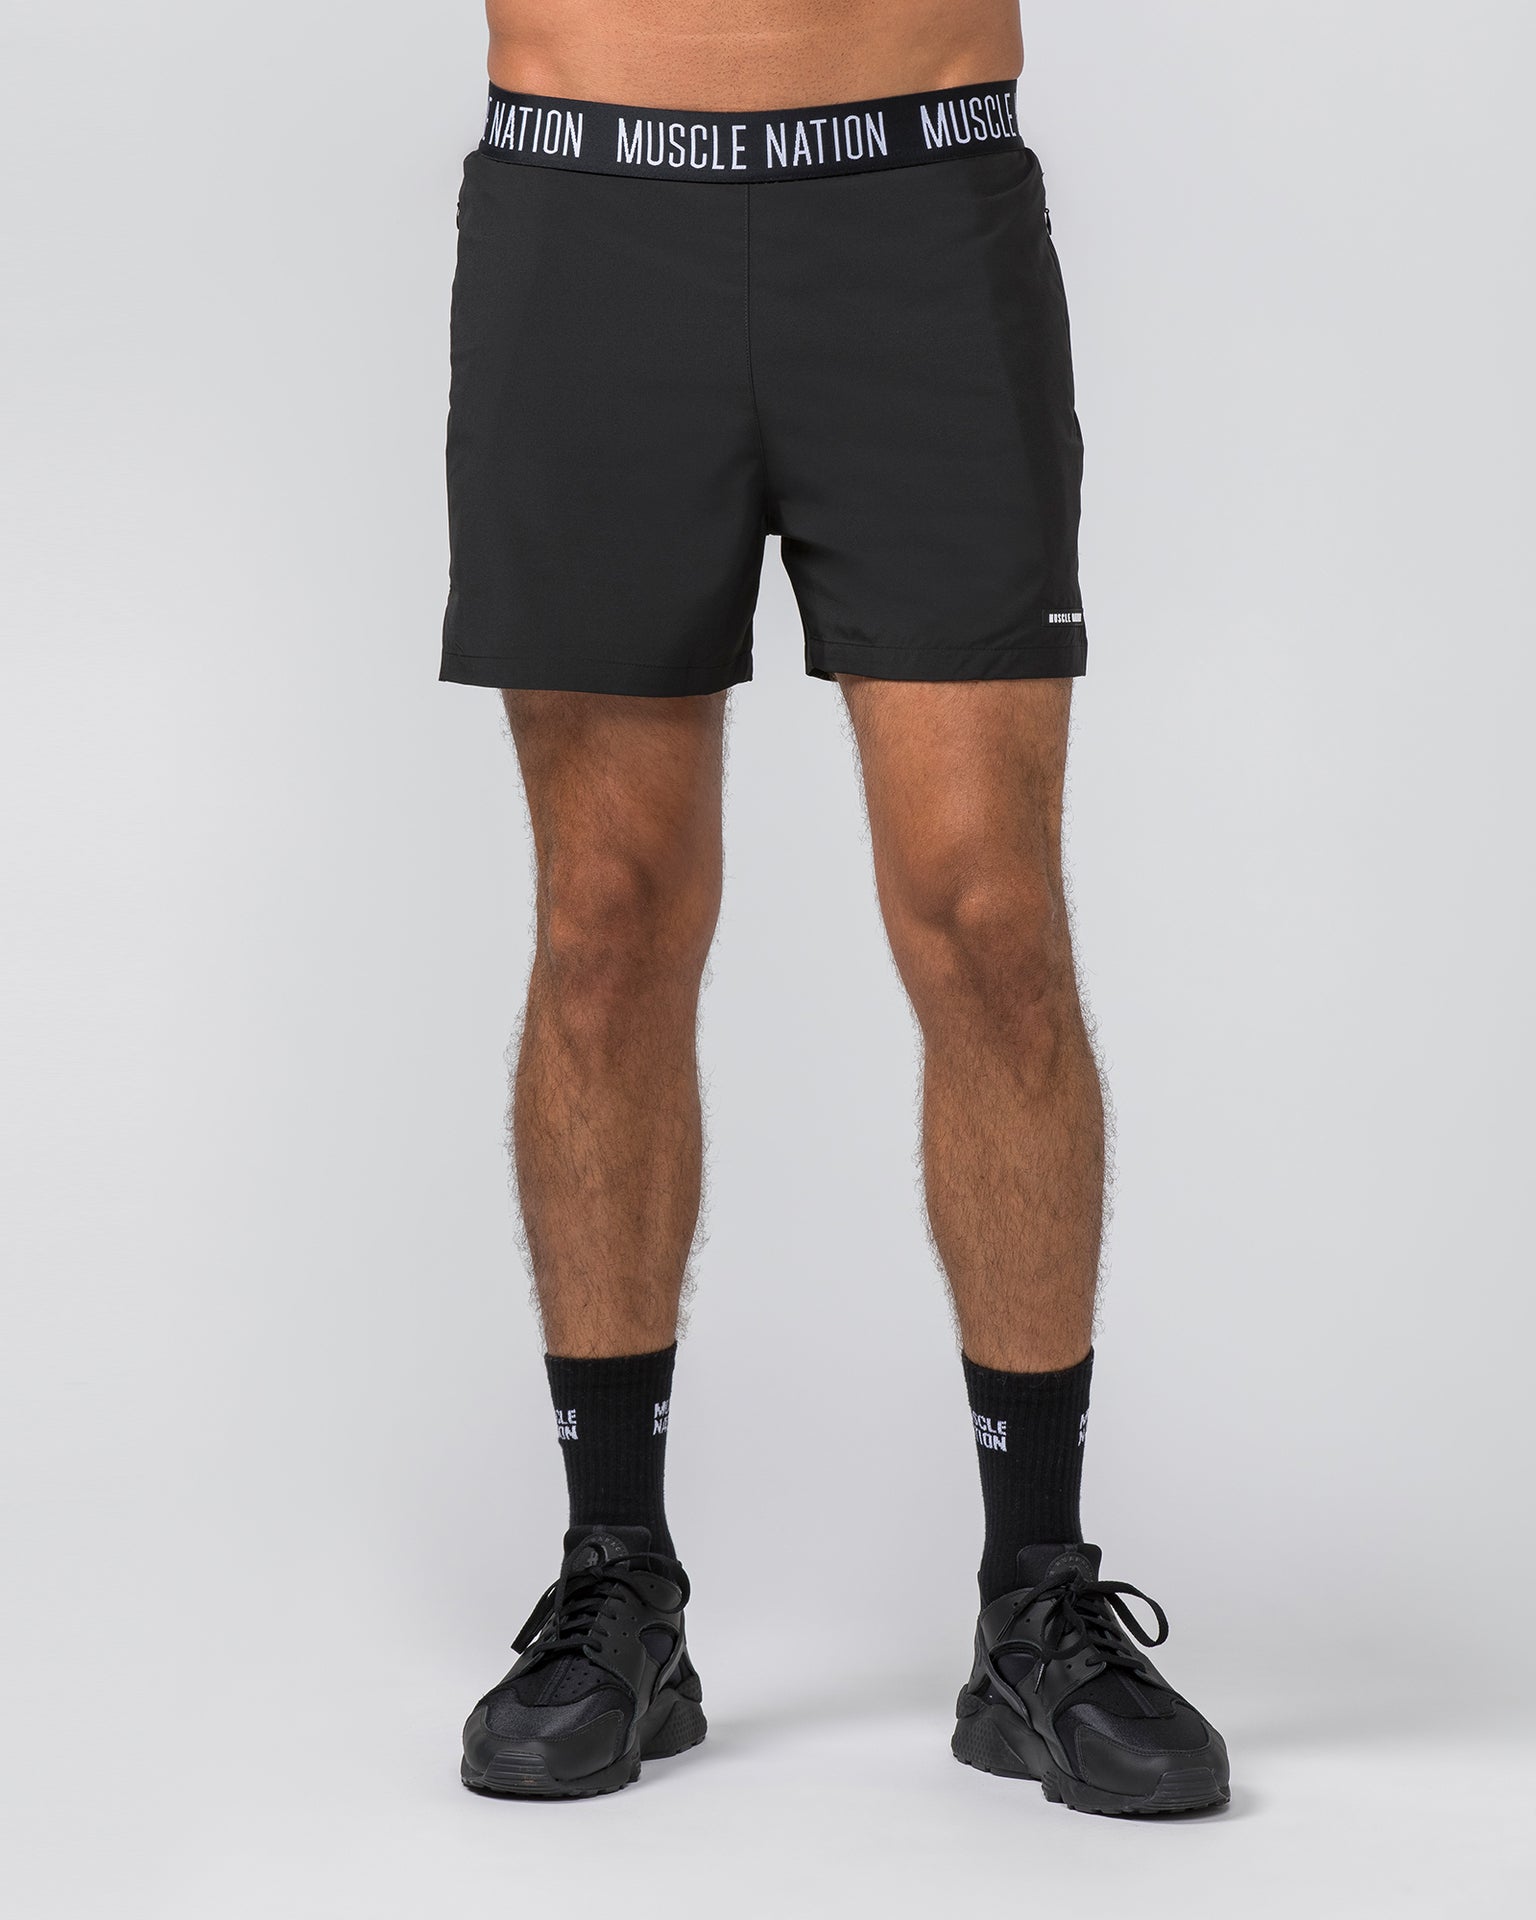 Muscle Nation Gym Shorts Level Up Training 4'' Shorts - Black (Black Logo)